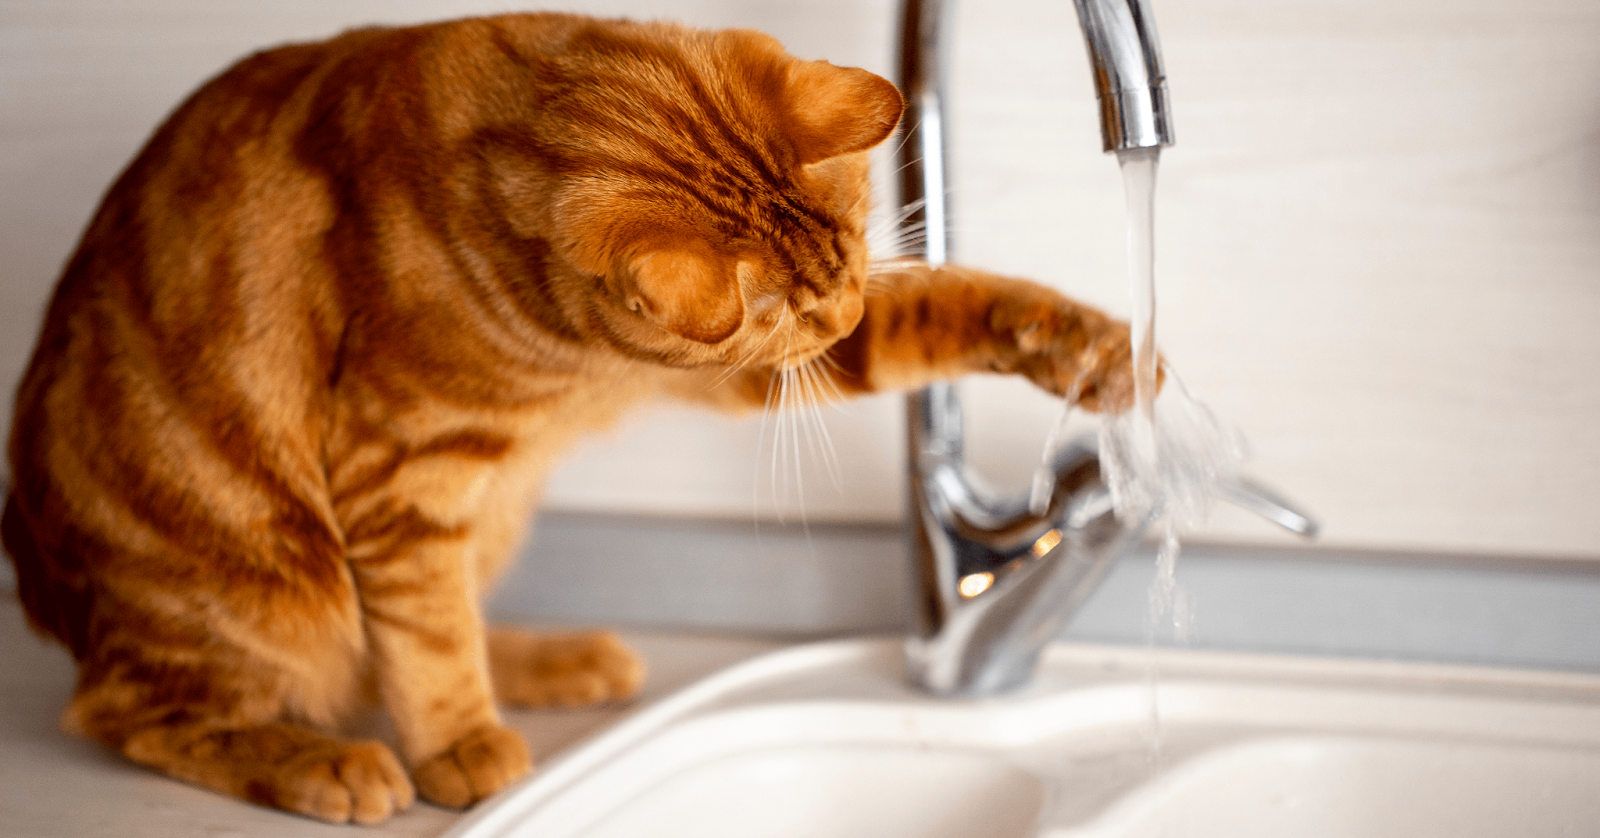 gato naranja jugando con agua que sale del grifo